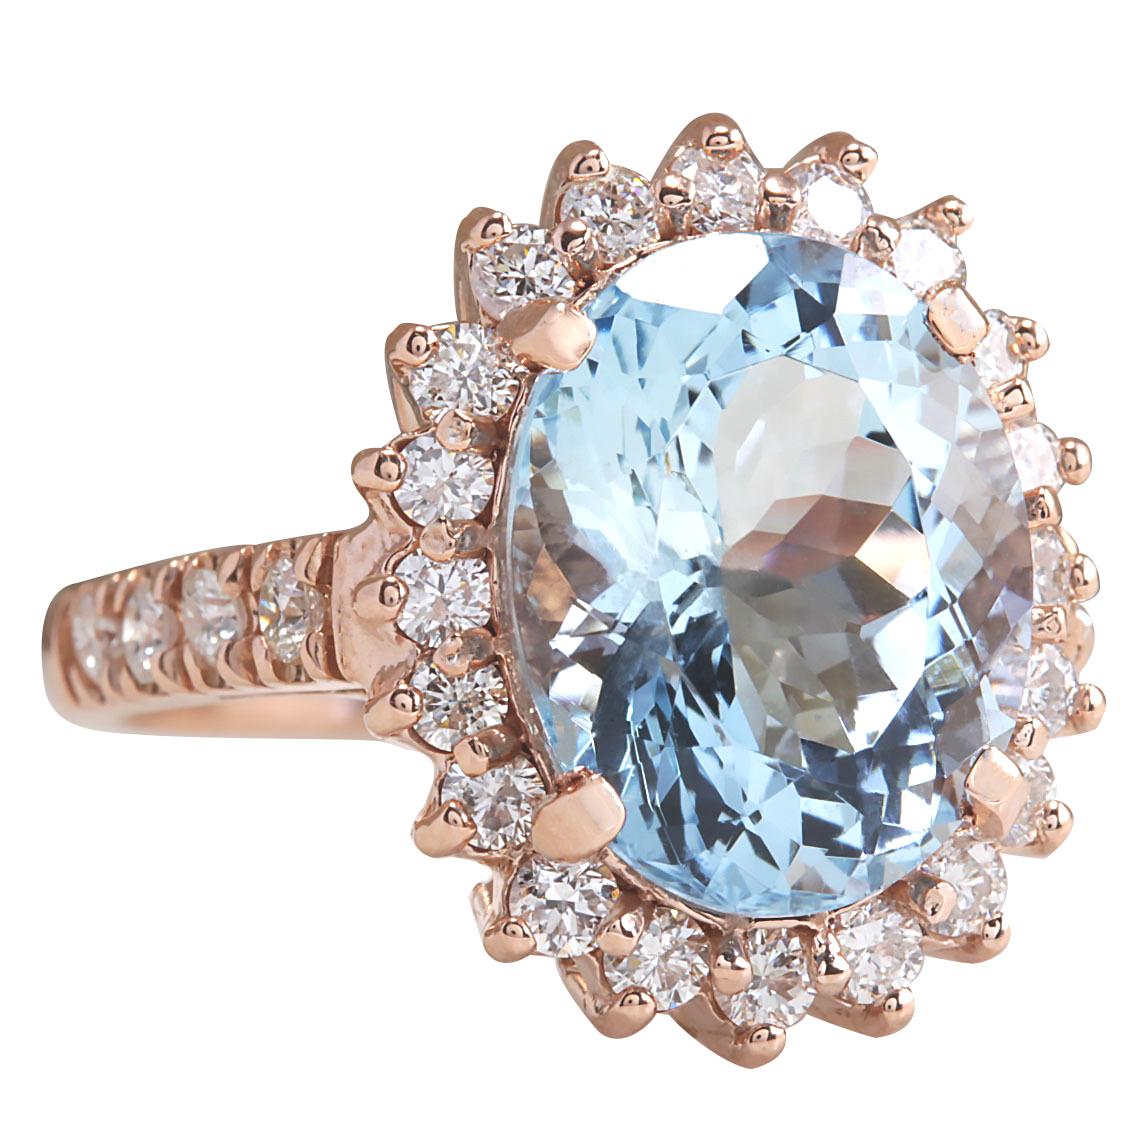 6.77 Carat Natural Aquamarine 14 Karat Rose Gold Diamond Ring
Stamped: 14K Rose Gold
Total Ring Weight: 6.0 Grams
Total Natural Aquamarine Weight is 5.77 Carat (Measures: 13.00x11.00 mm)
Color: Blue
Total Natural Diamond Weight is 1.00 Carat
Color: